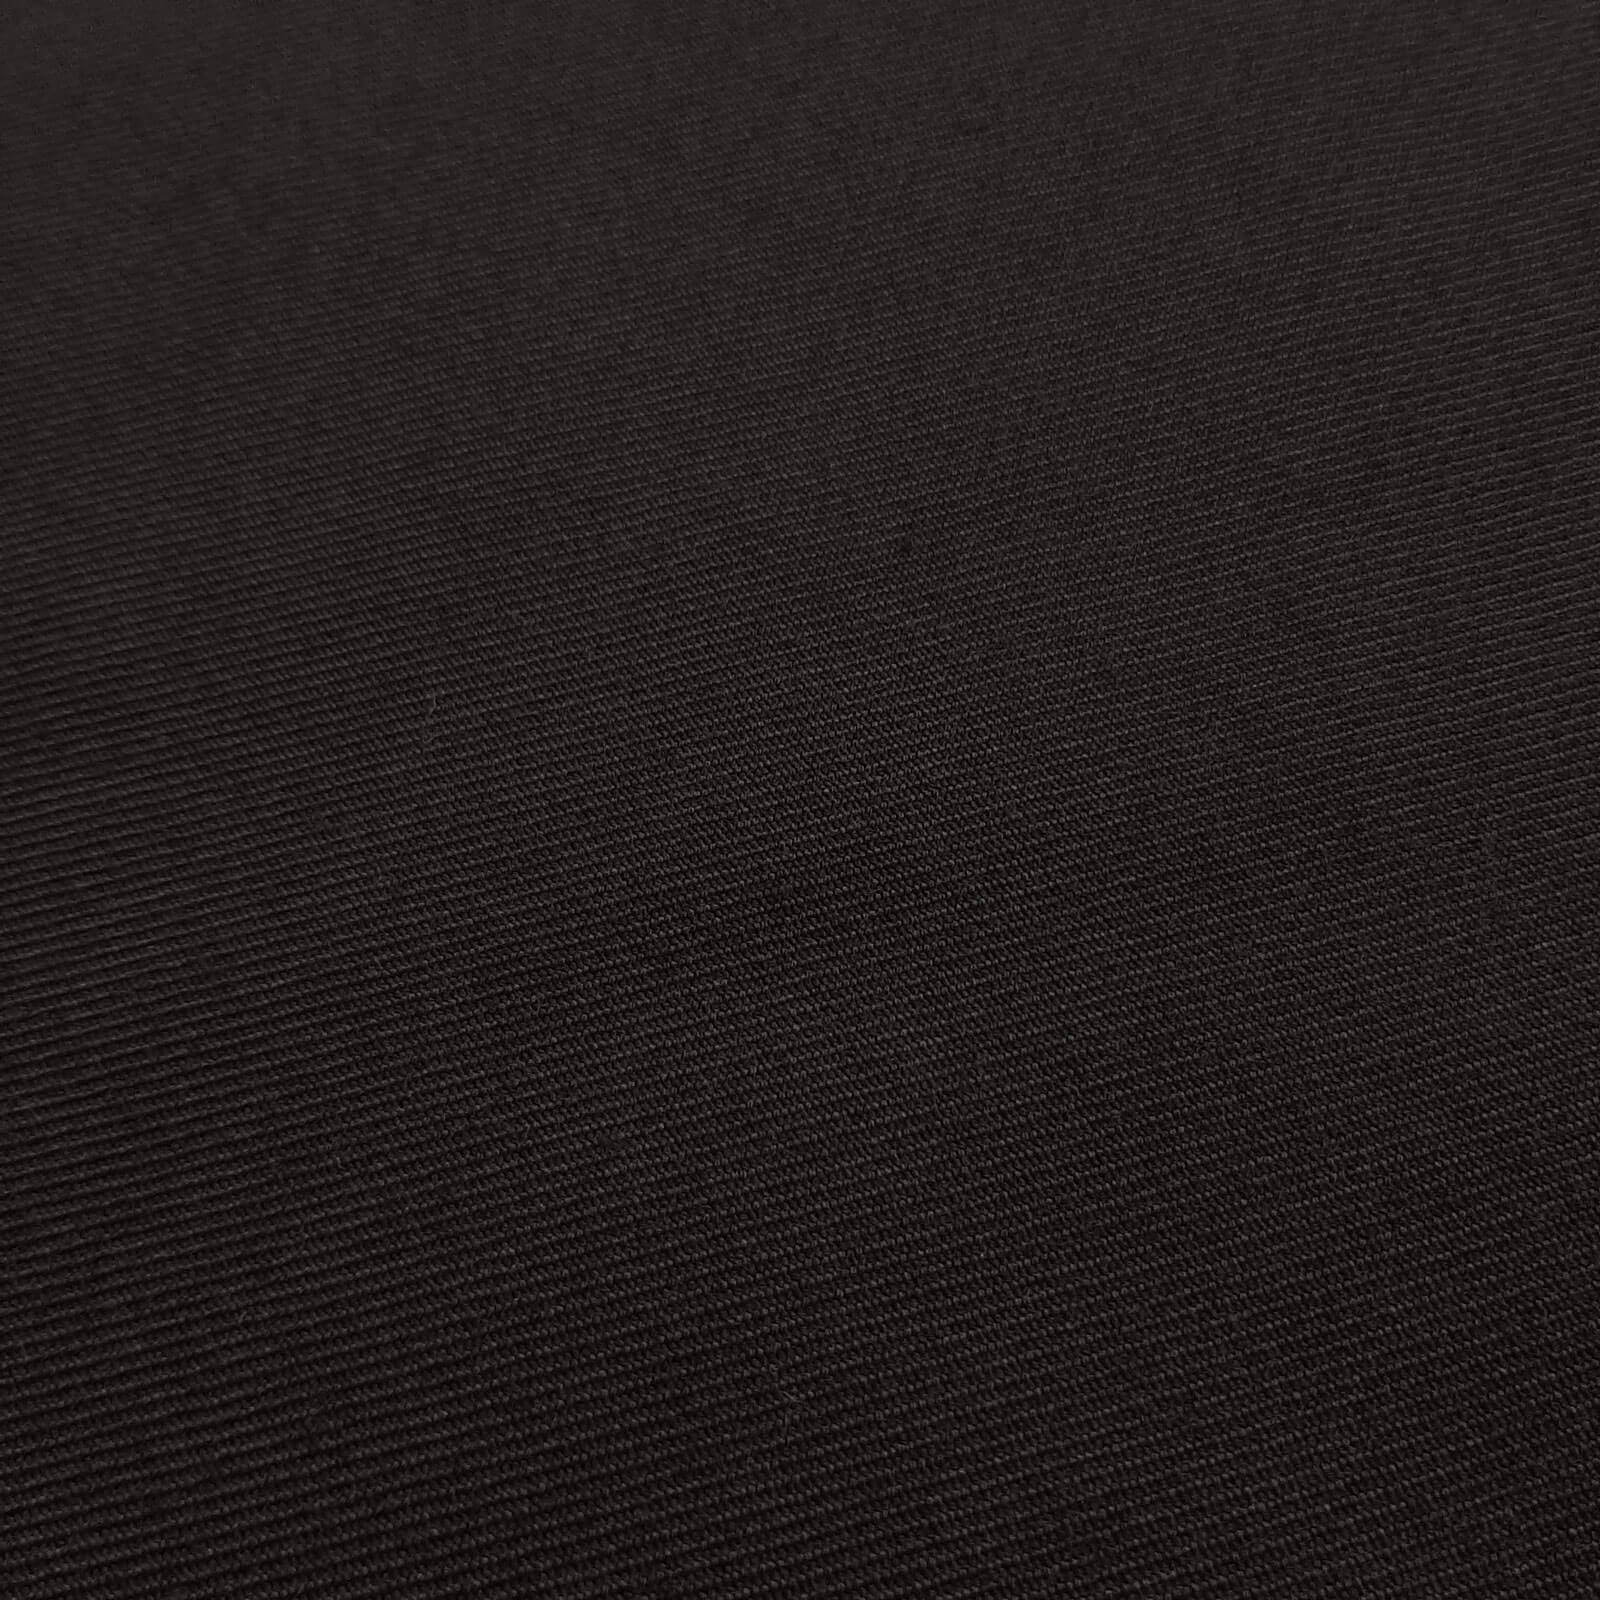 Franziskus - Panno di lana / Panno uniforme - Nero 